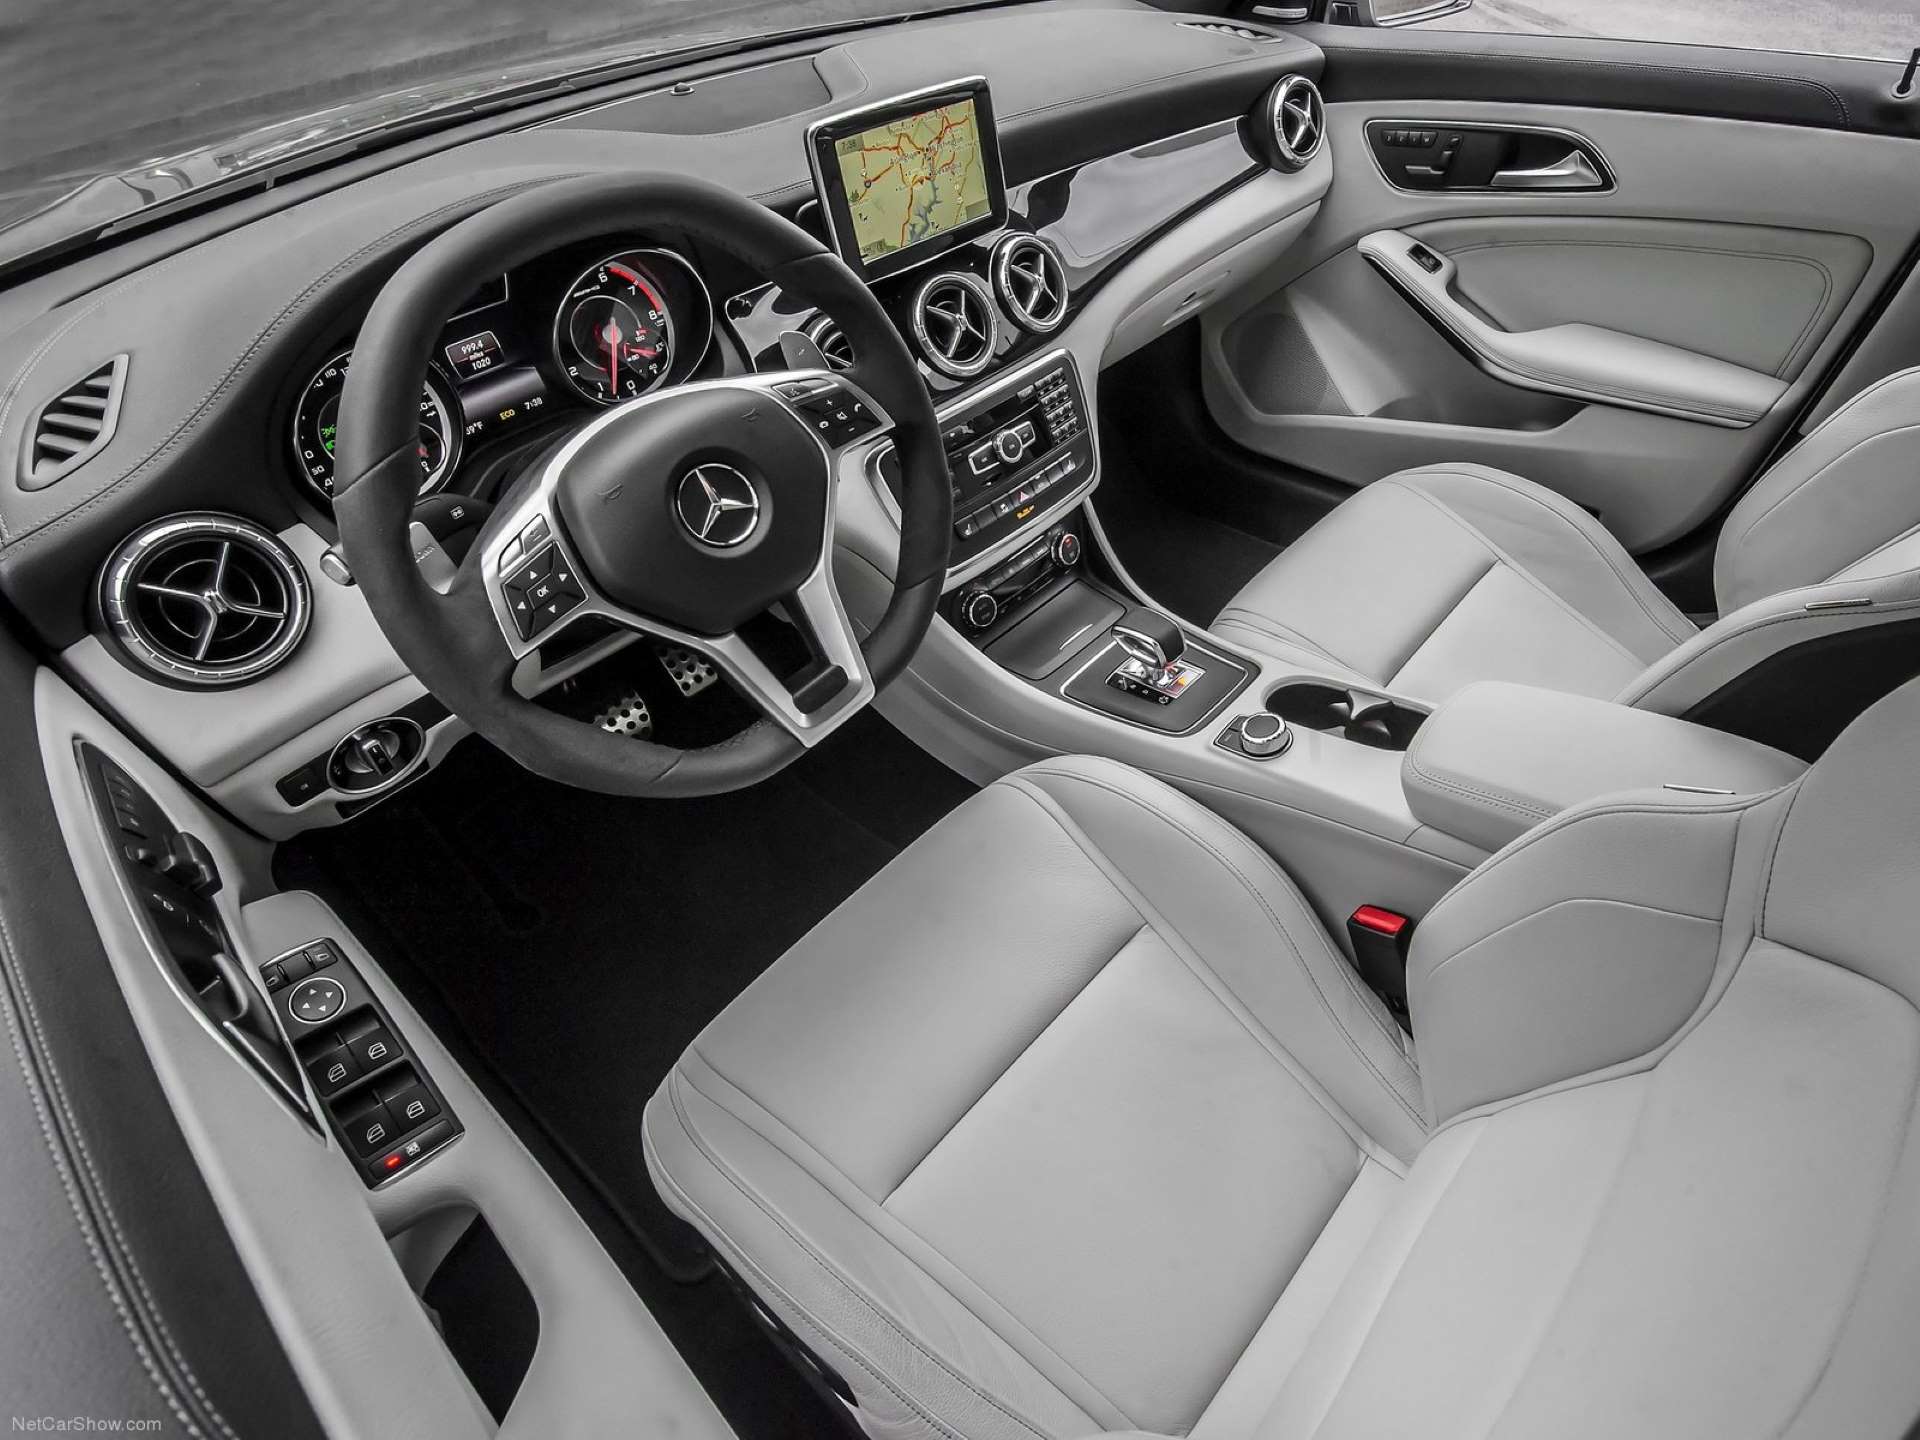 Best FWD Under $25k Mercedes-Benz CLA250 interior